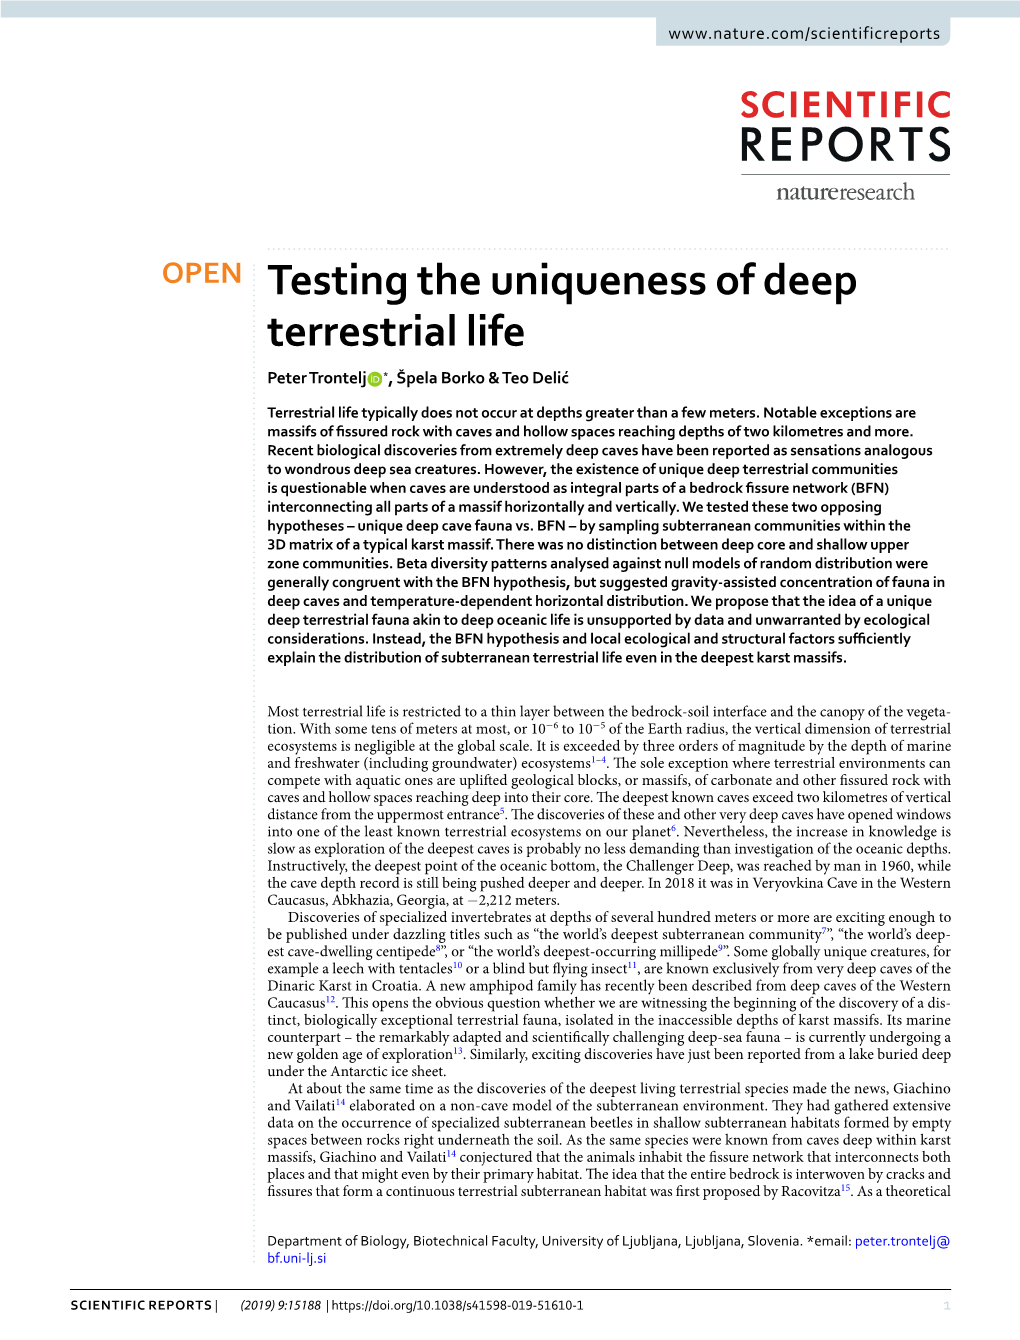 Testing the Uniqueness of Deep Terrestrial Life Peter Trontelj *, Špela Borko & Teo Delić